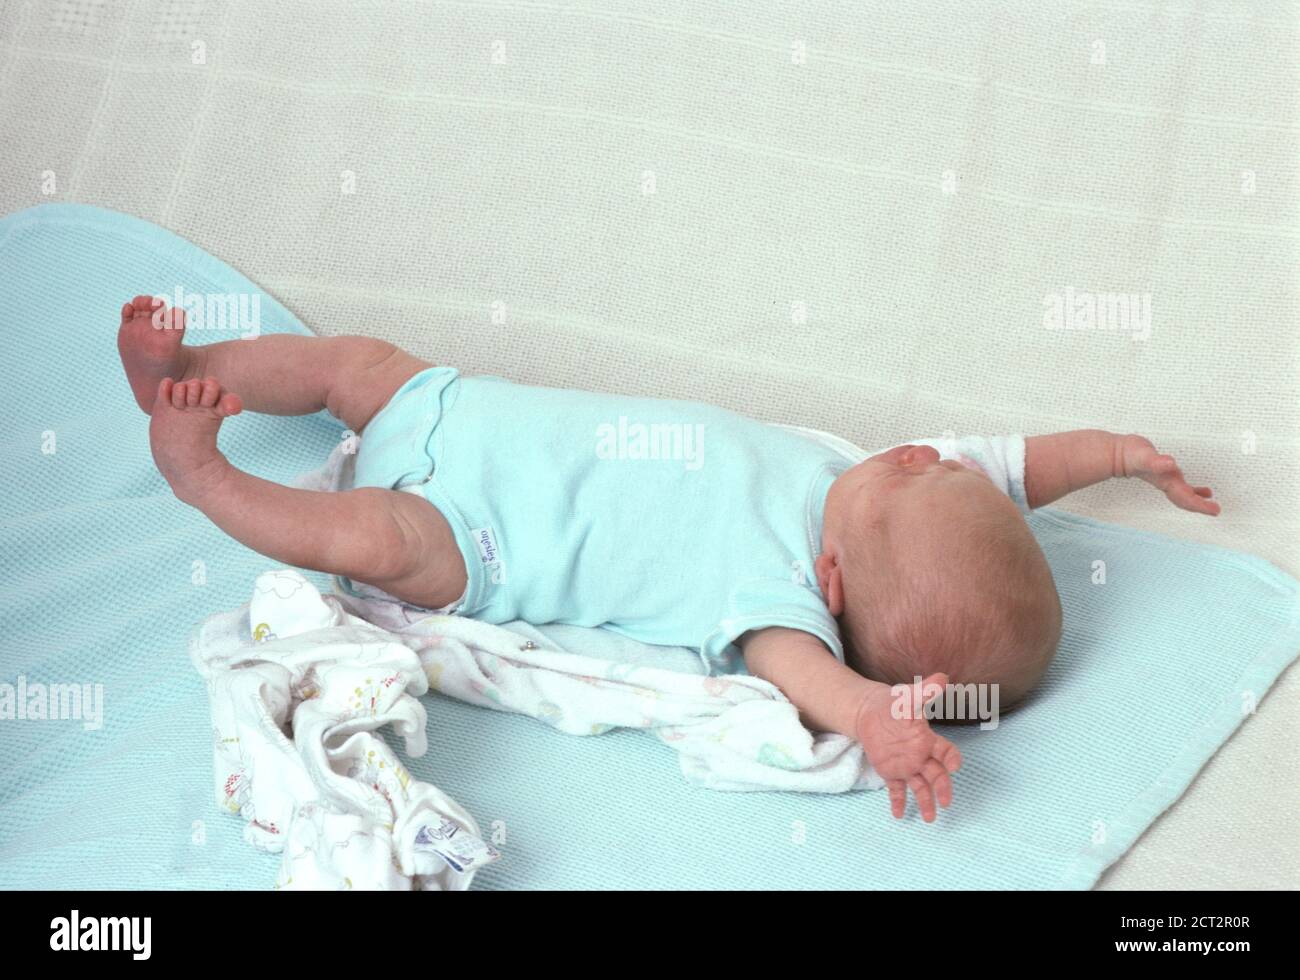 Nouveau-né bébé fille, 3 semaines, sur le dos, pleine longueur, réflexe: L'amidé (Moro reflex) Banque D'Images